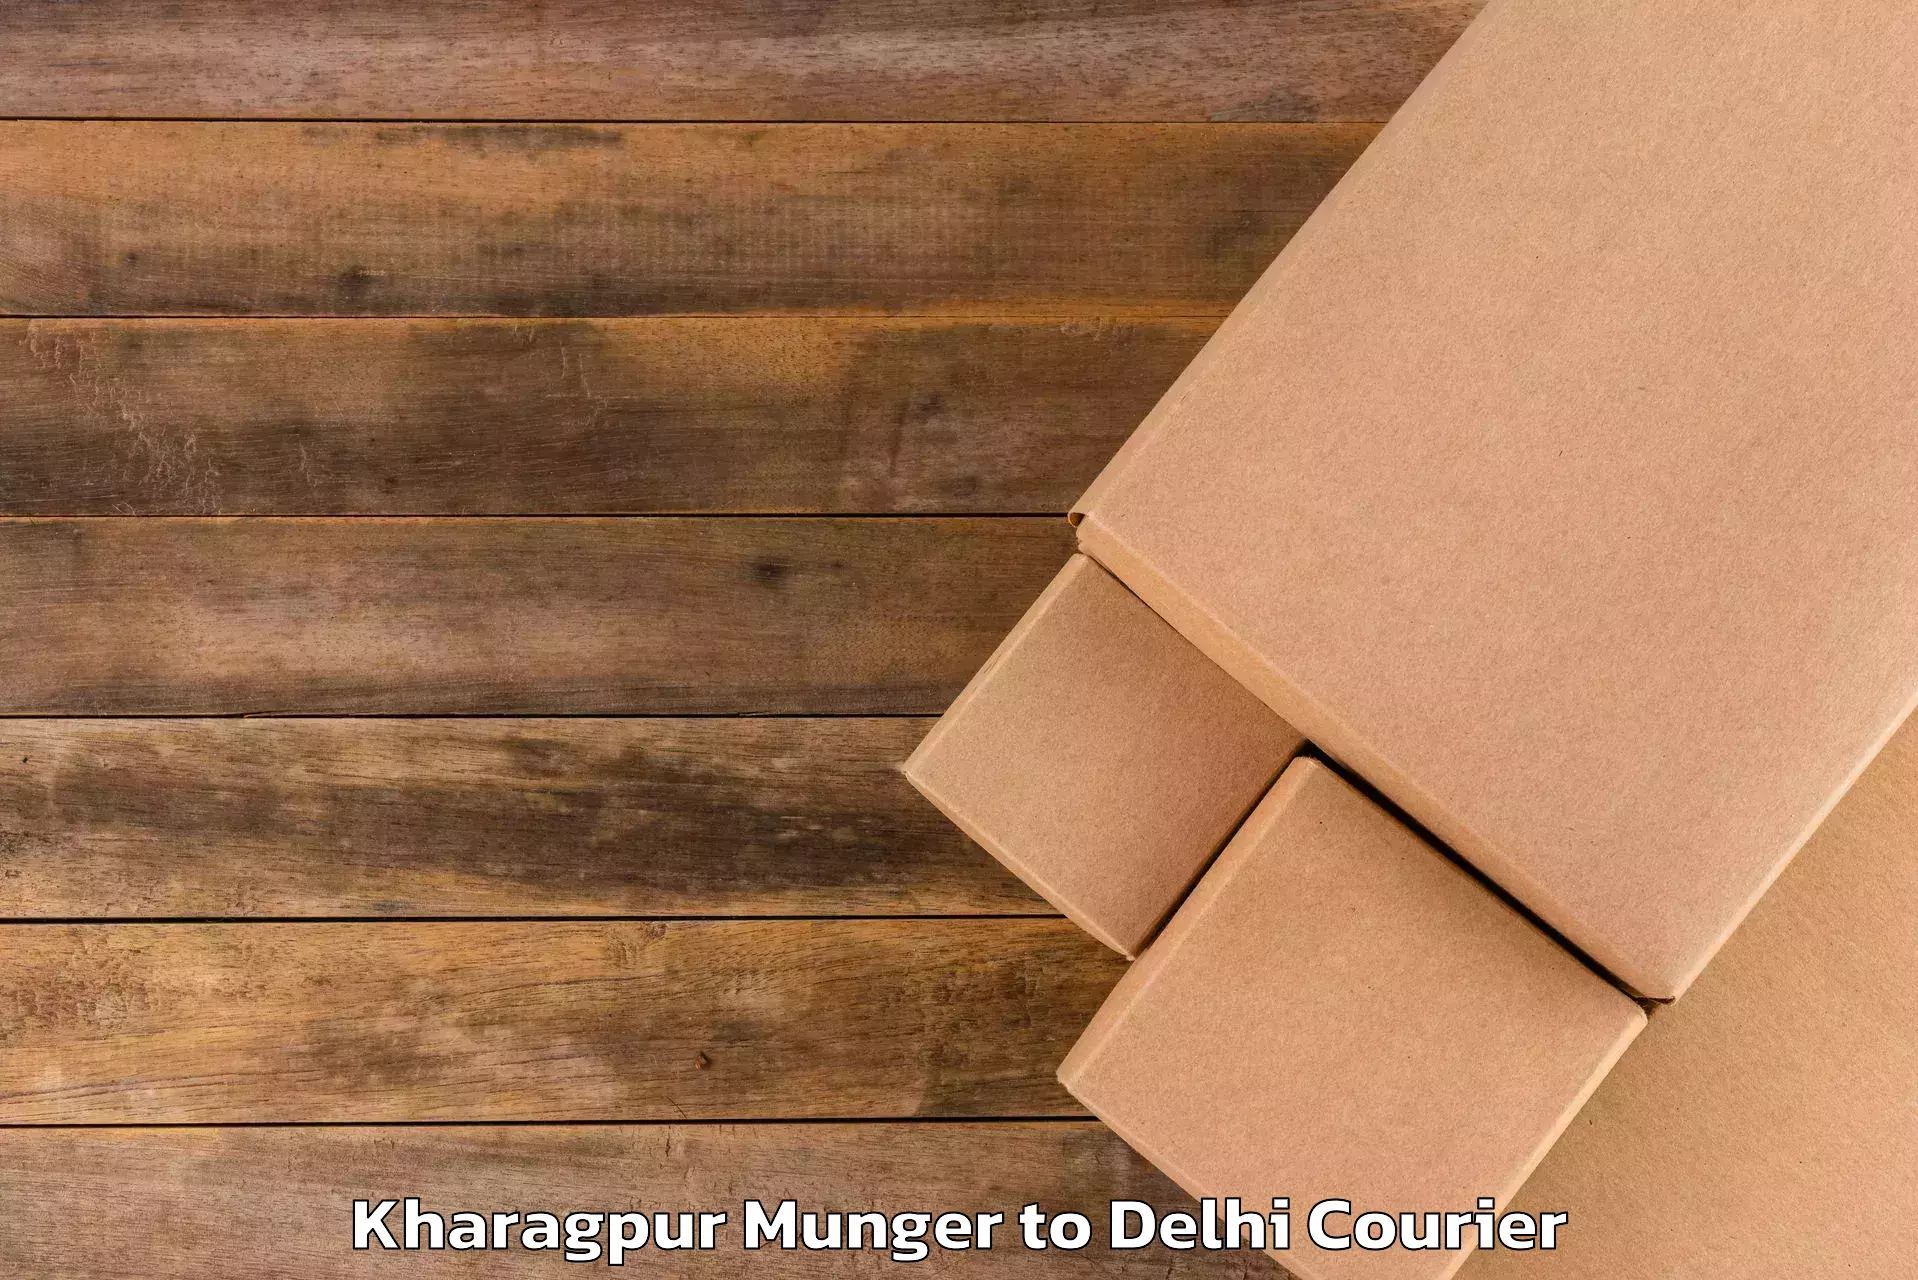 Smart baggage shipping Kharagpur Munger to Delhi